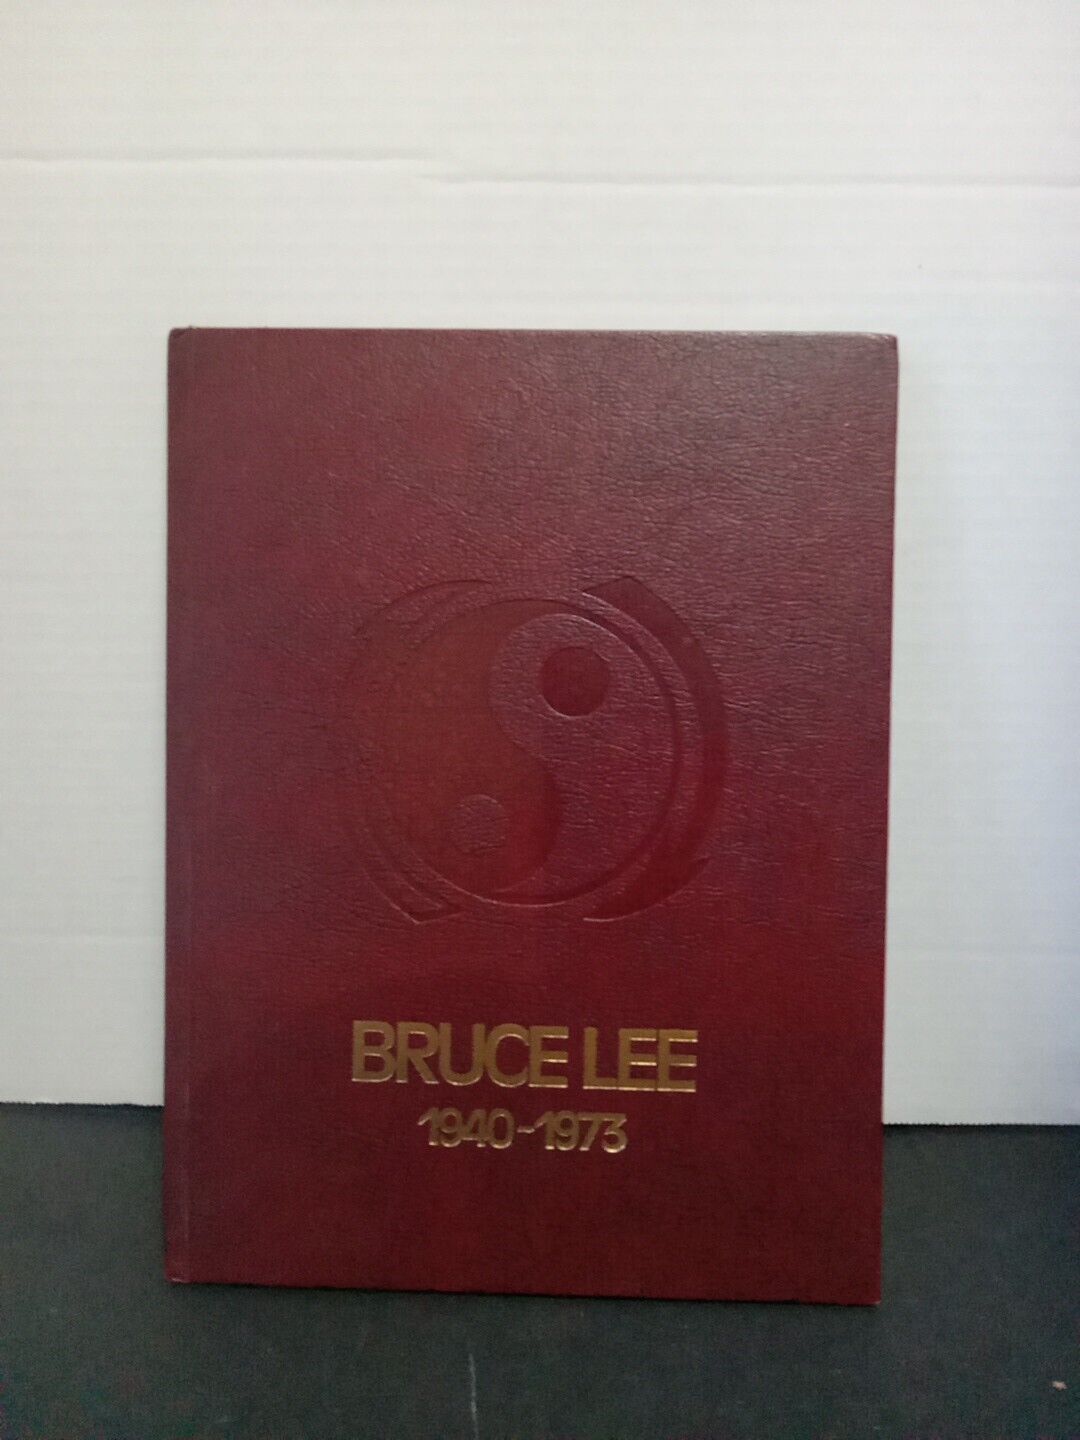 Vintage Bruce Lee 1940-1973 Memorial Book - By Linda Lee - 1974 Second Printing